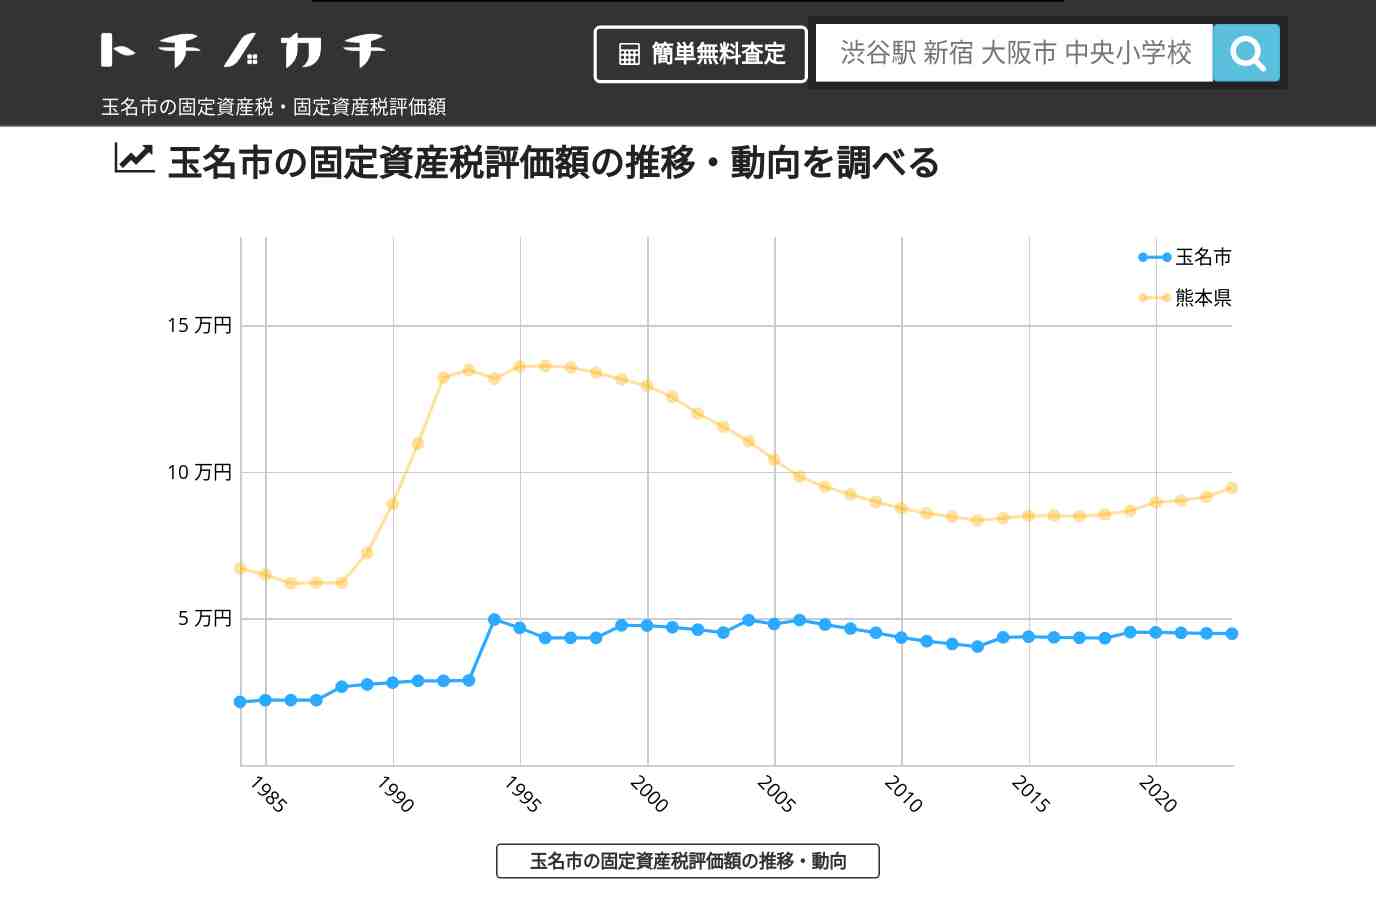 月瀬小学校(熊本県 玉名市)周辺の固定資産税・固定資産税評価額 | トチノカチ